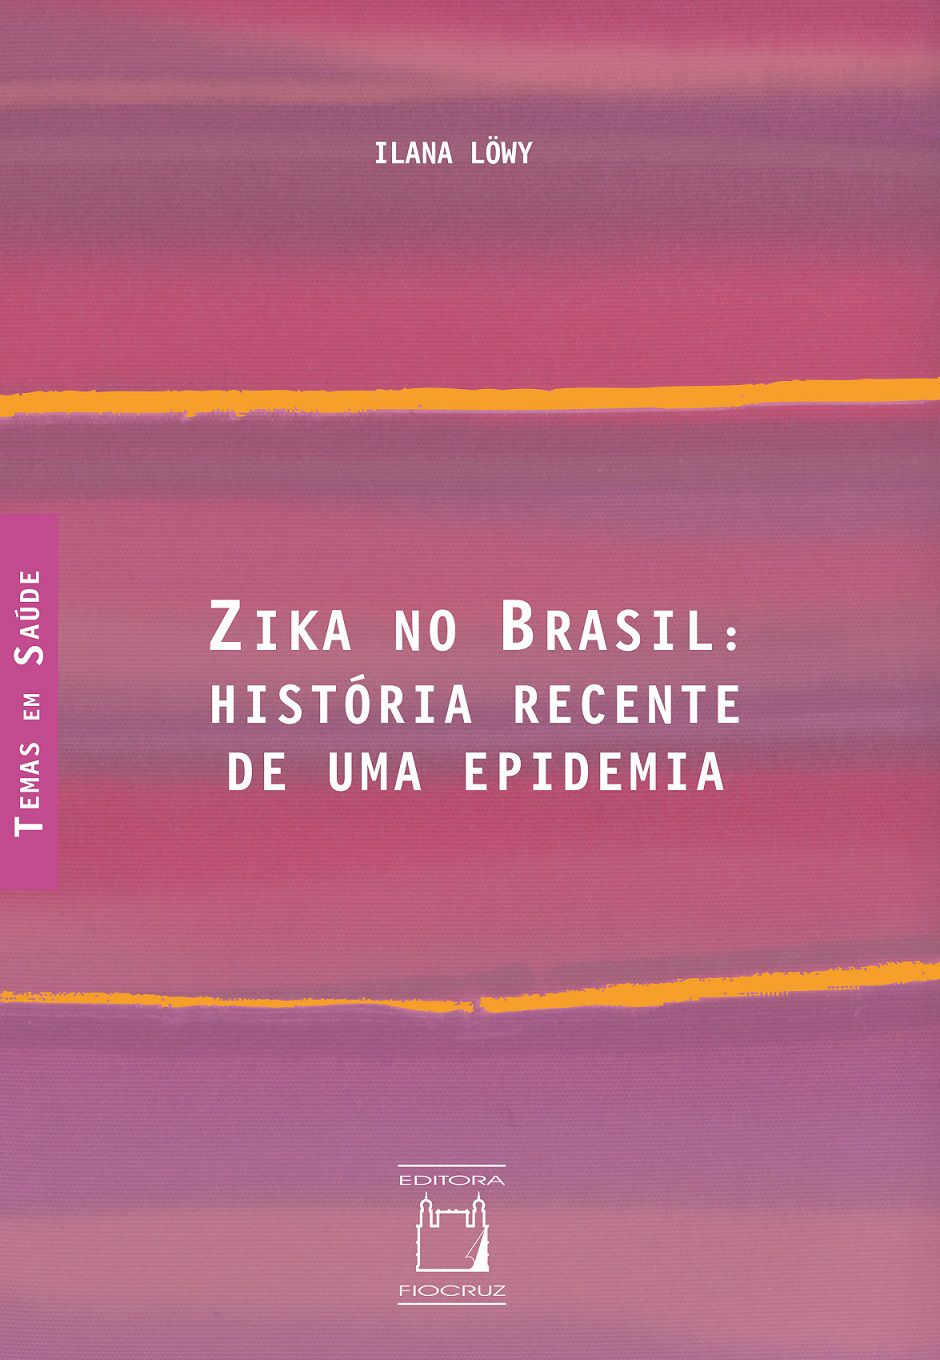 Zika no Brasil: história recente de uma epidemia  - Livraria Virtual da Editora Fiocruz